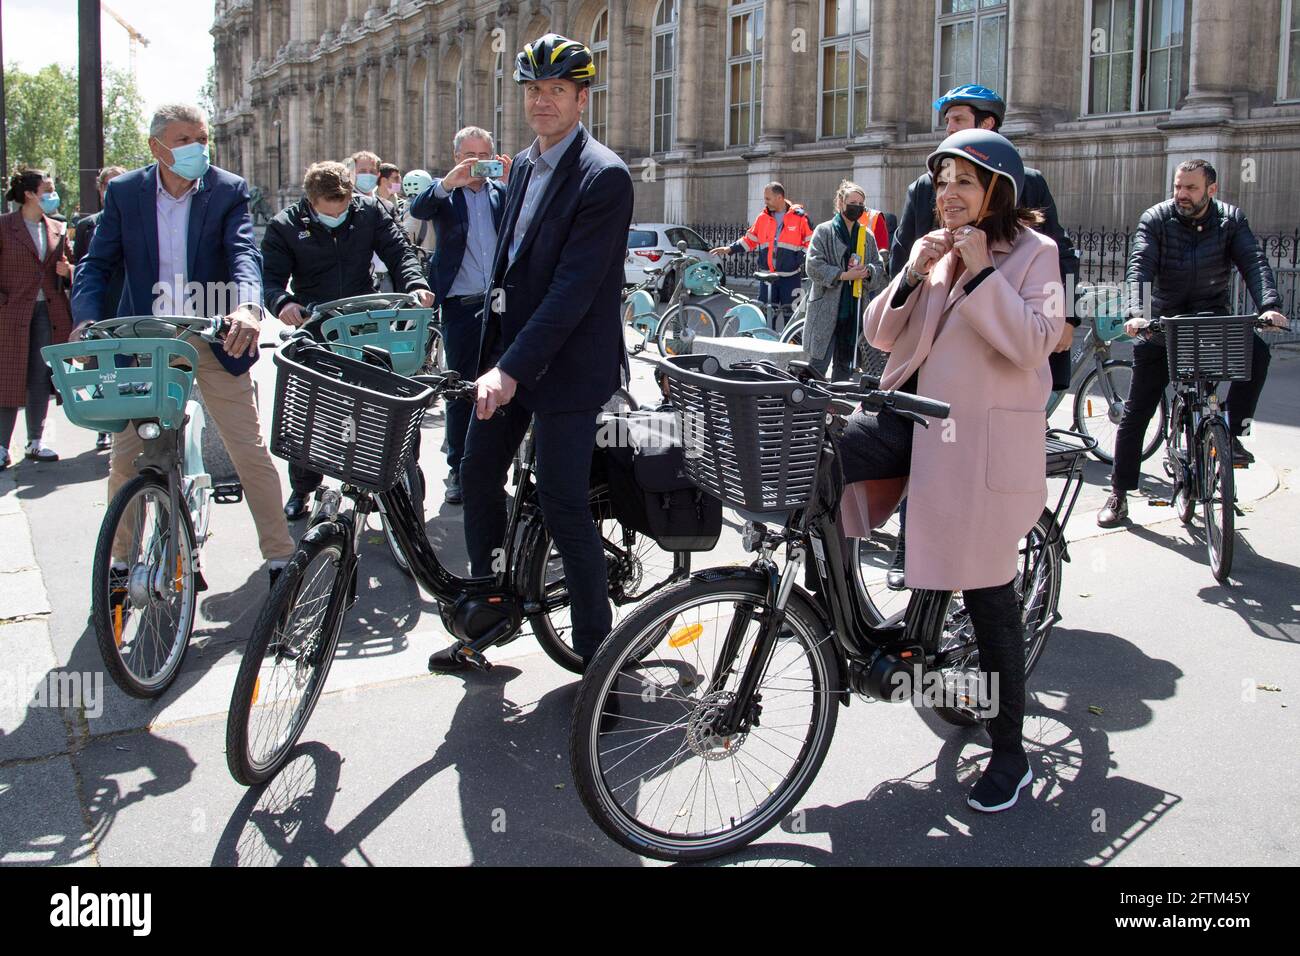 Bernard Thevenet, Christian Prudhomme, Mayor of Paris Anne Hidalgo are seen  riding bicycles as the city of Paris obtains the Label 'Ville A Velo du  Tour de France' (Tour de France Cycle